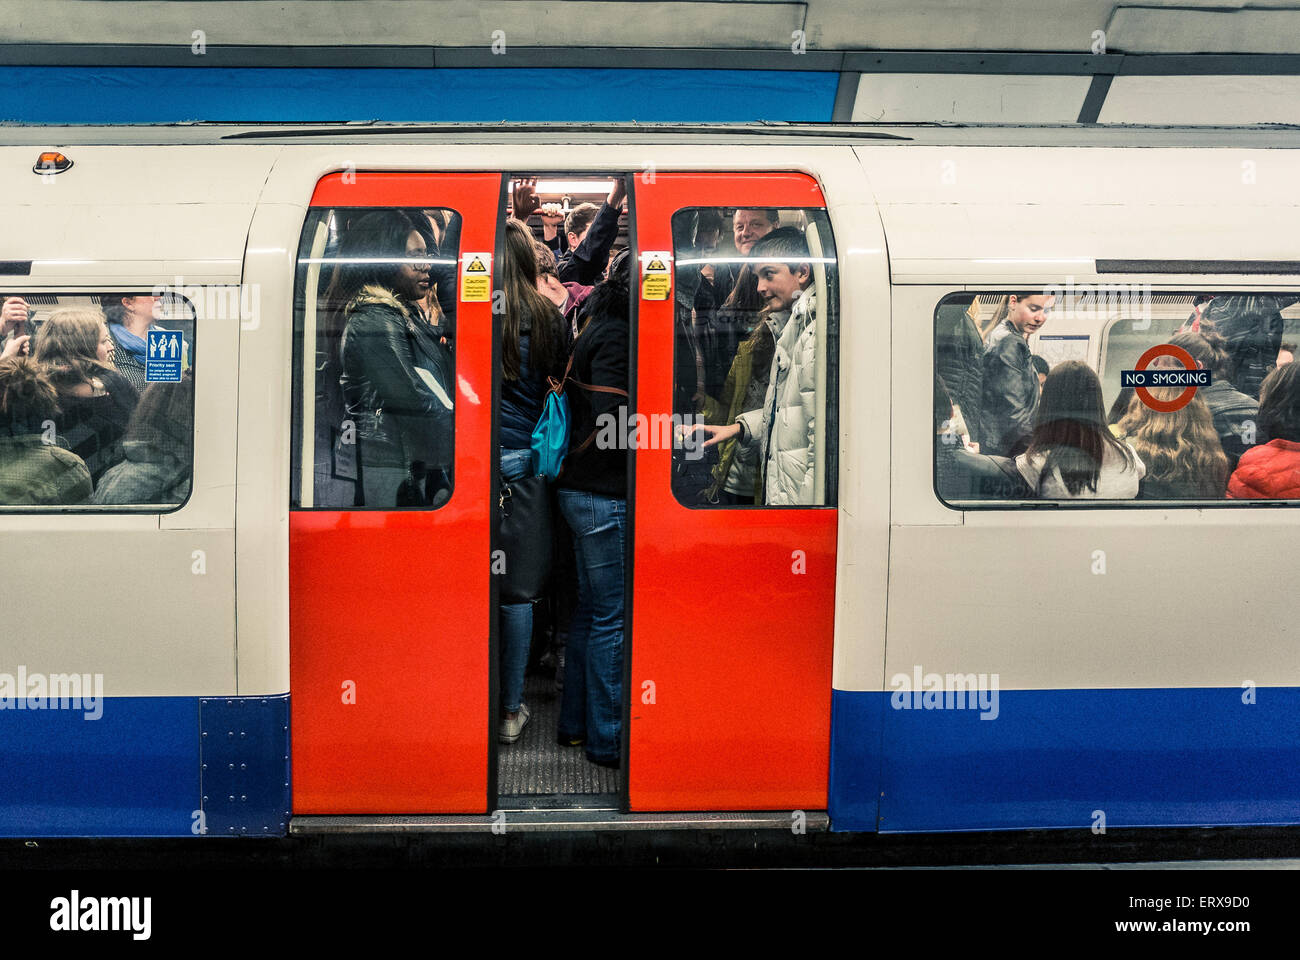 Train de tube plein de gens sur le métro de Londres - fermeture des portes Banque D'Images